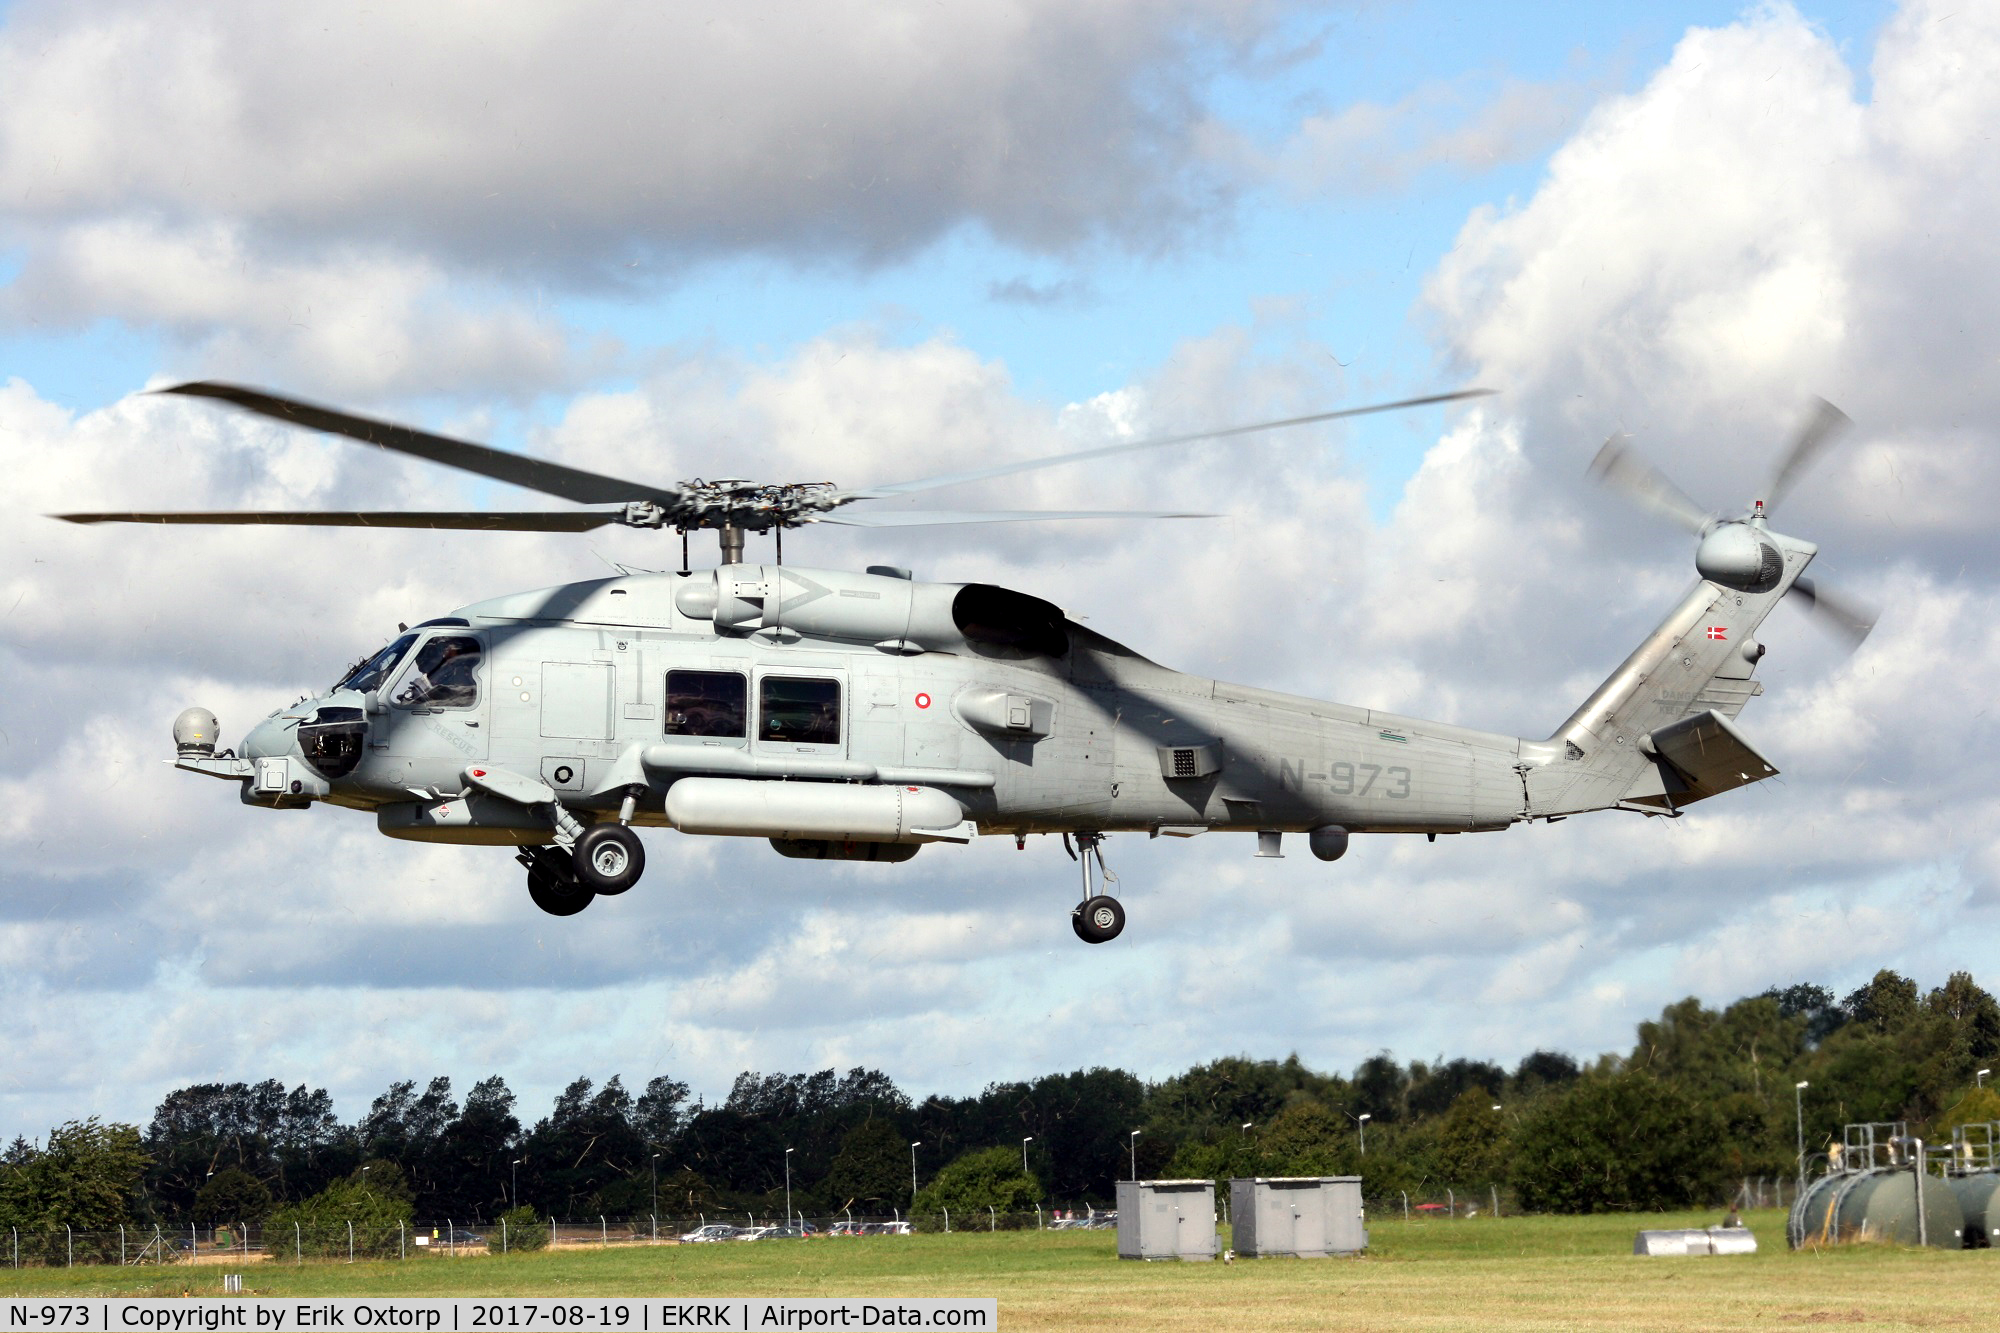 N-973, Sikorsky MH-60R Seahawk C/N 70-4440, N-973 at the 